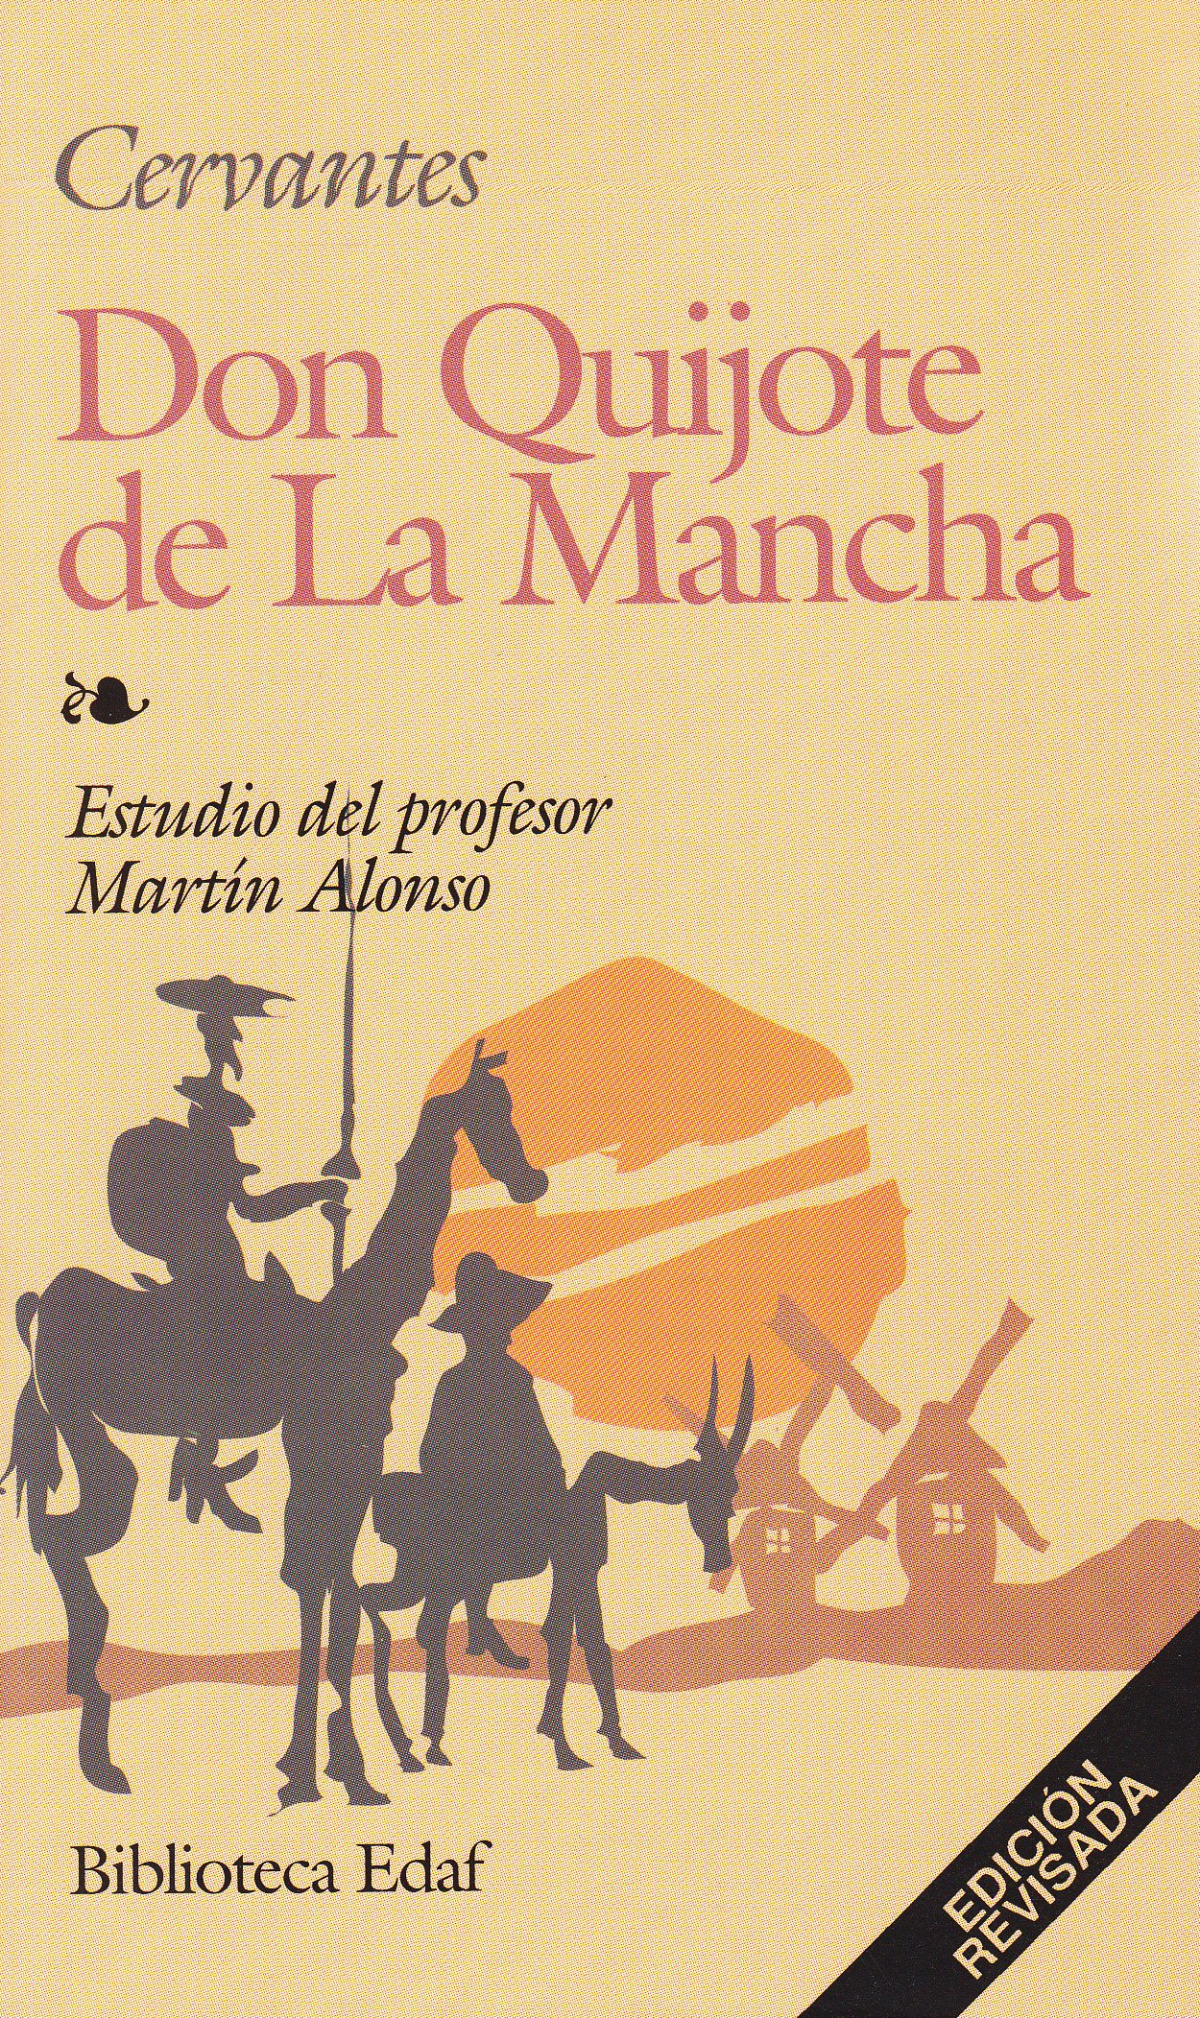 Don quijote de la mancha - Cervantes